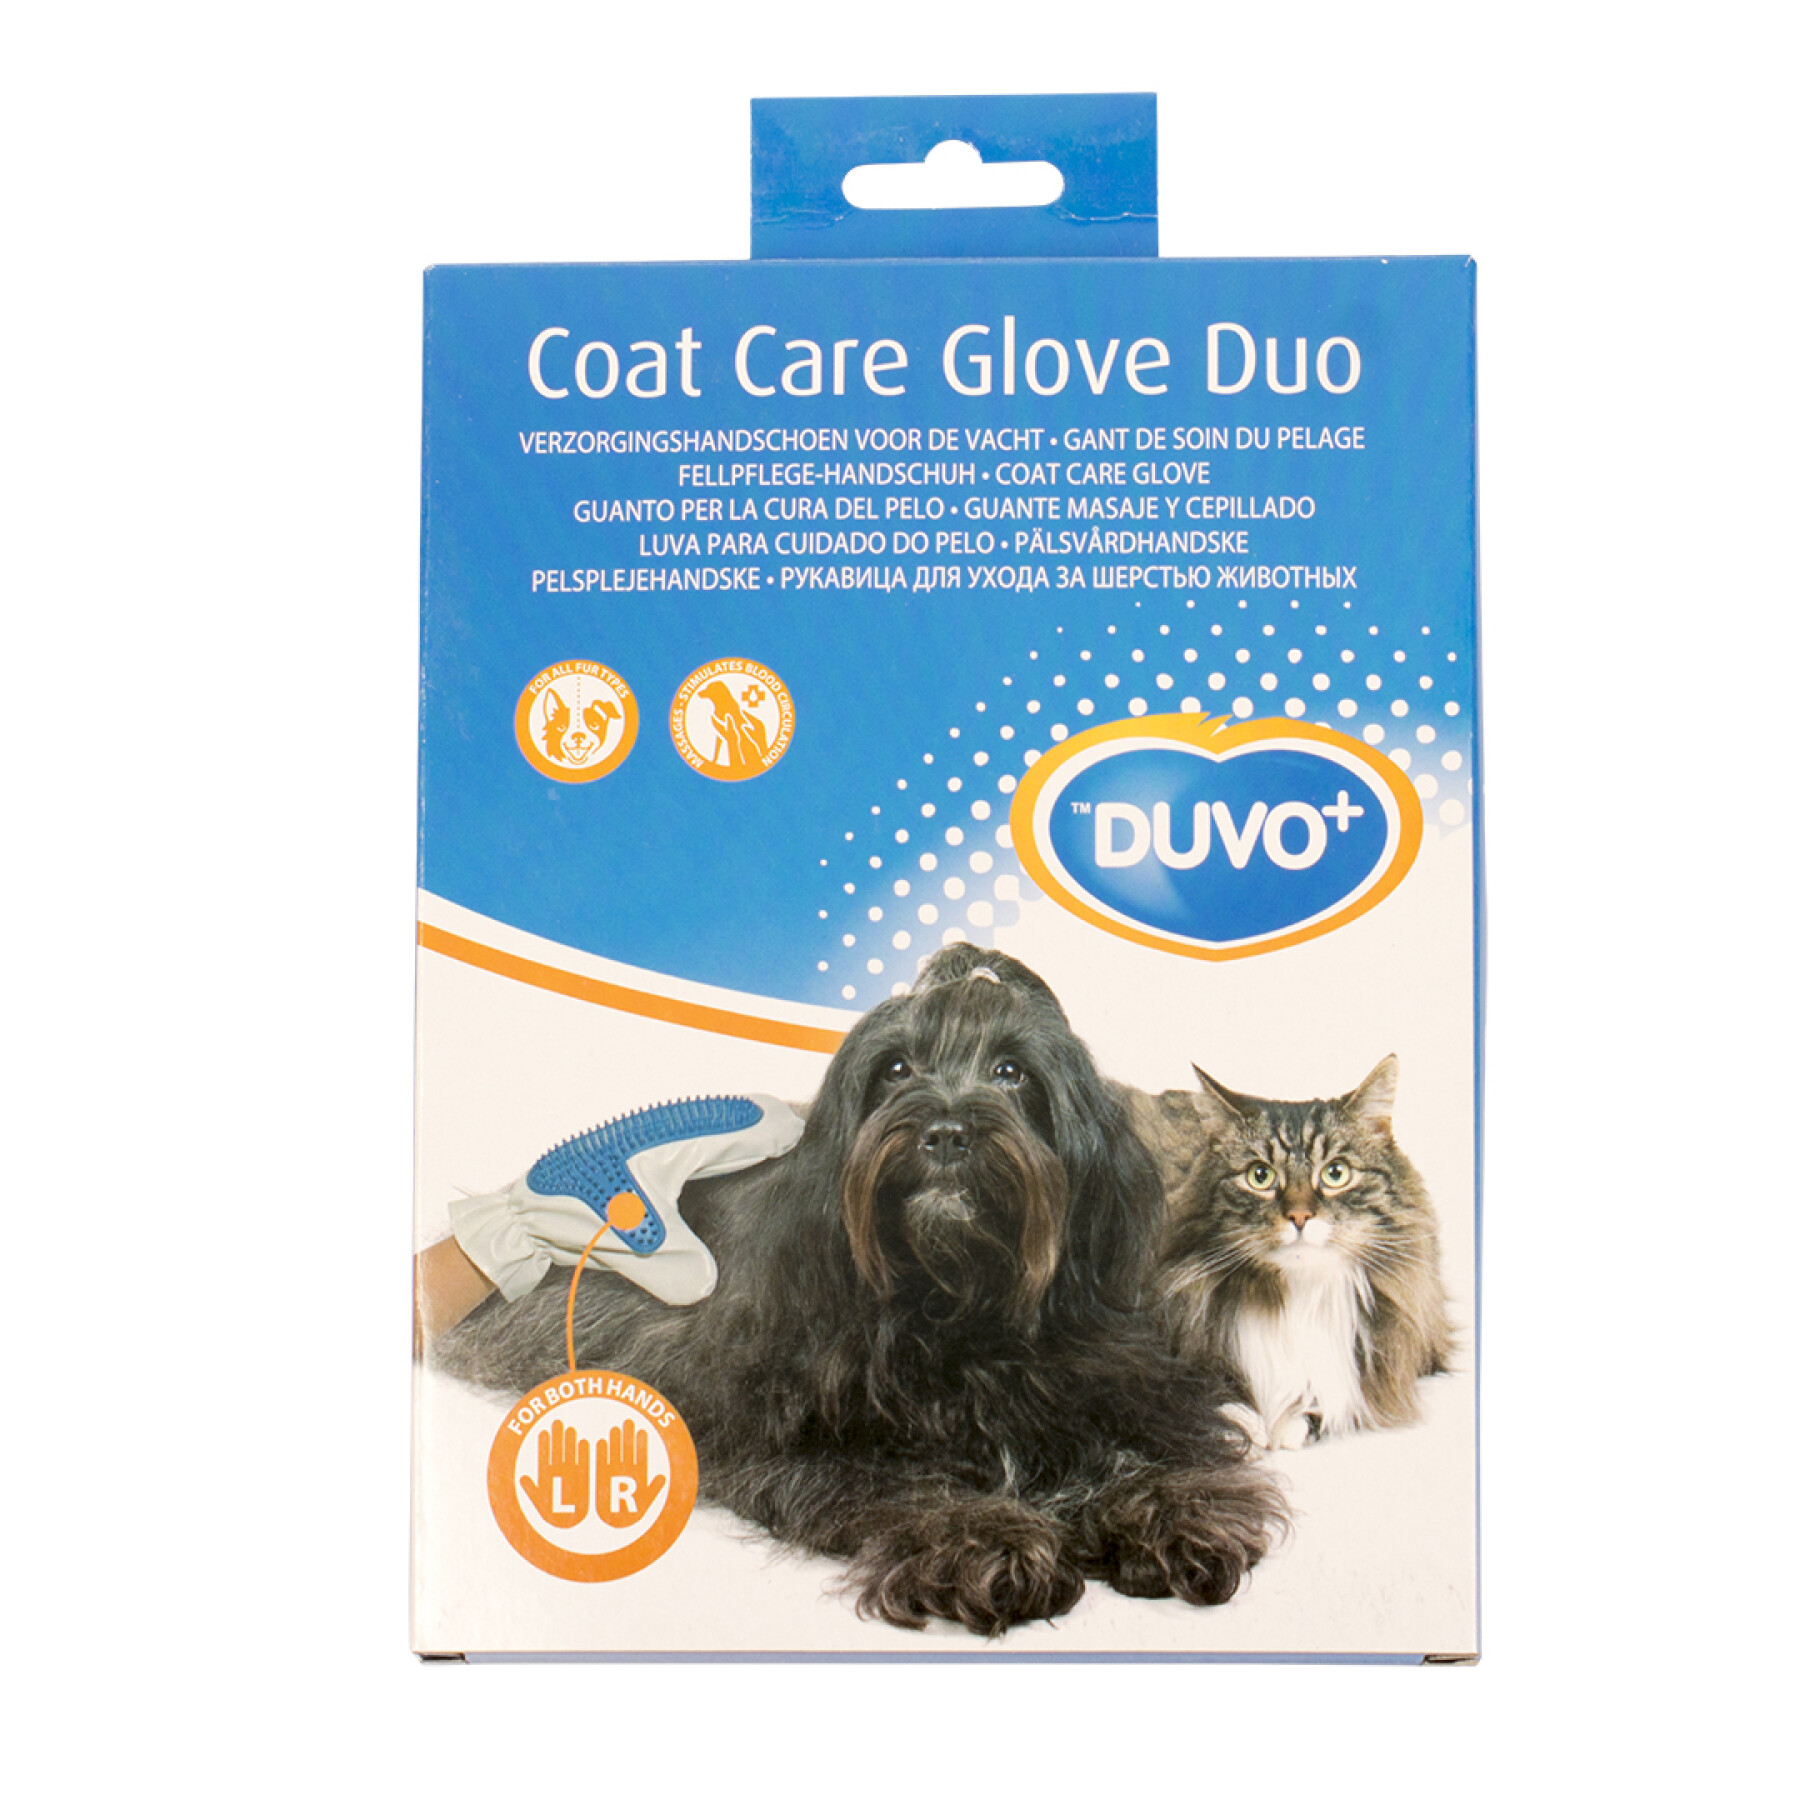 Hair care glove Duvoplus Duo